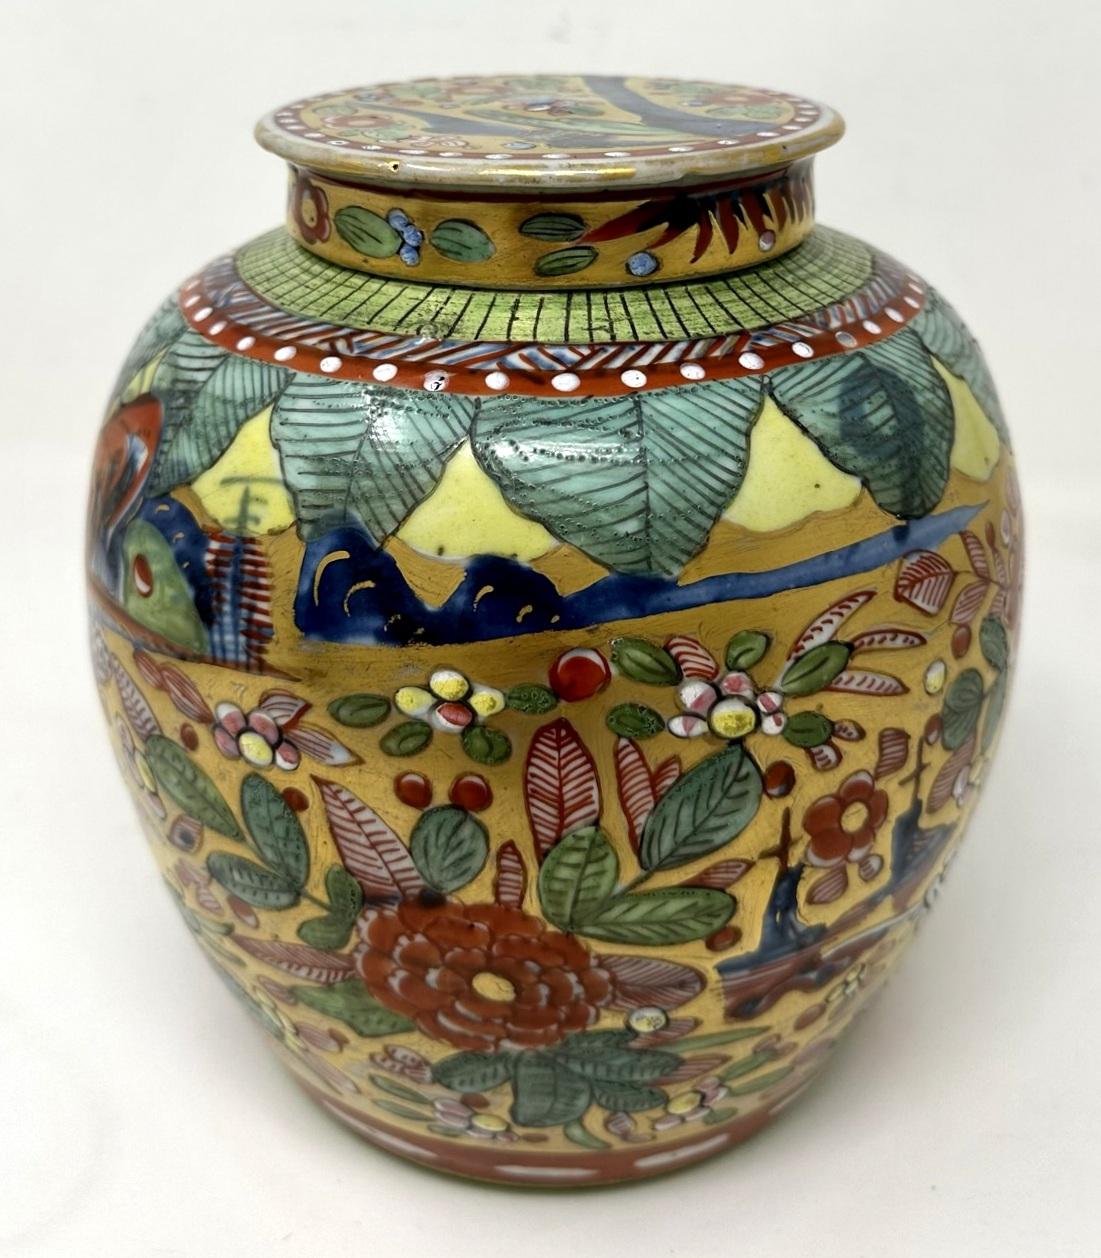 Ceramic Antique Asian Chinese Porcelain Export Ginger Jar Vase Important Royal Povenance